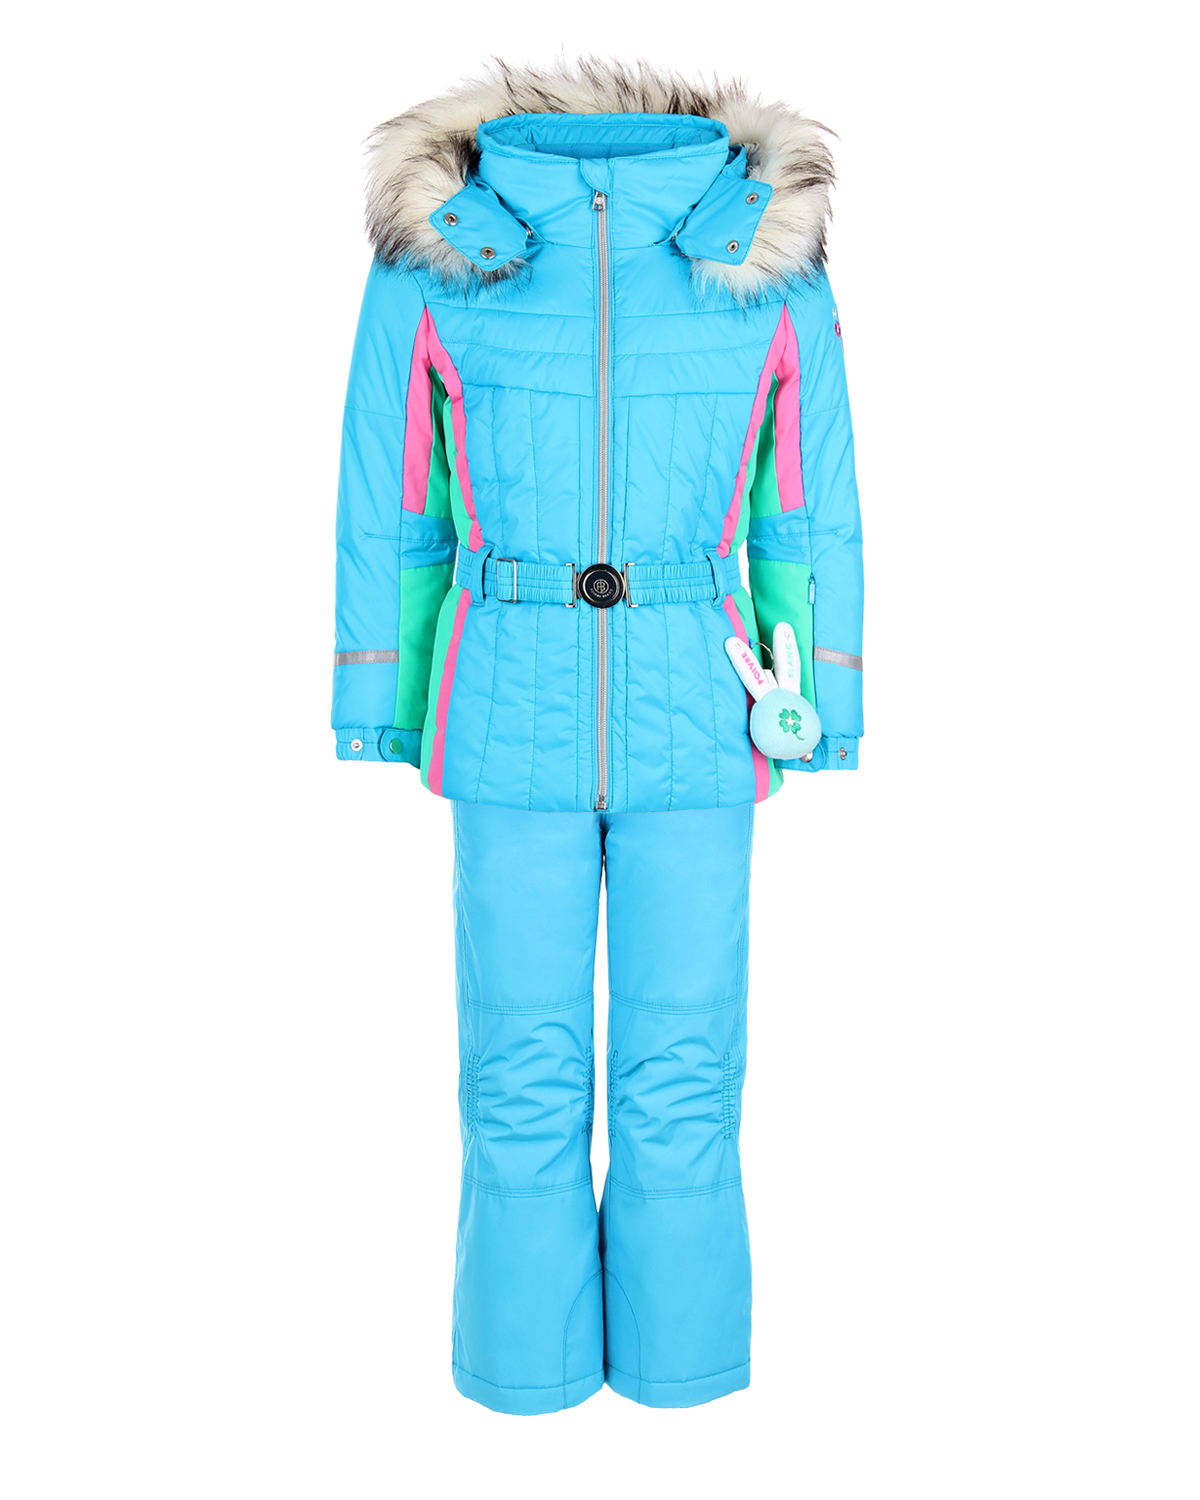 Комплект, куртка и полукомбиезон, голубой с вышивкой Poivre Blanc детский - фото 1